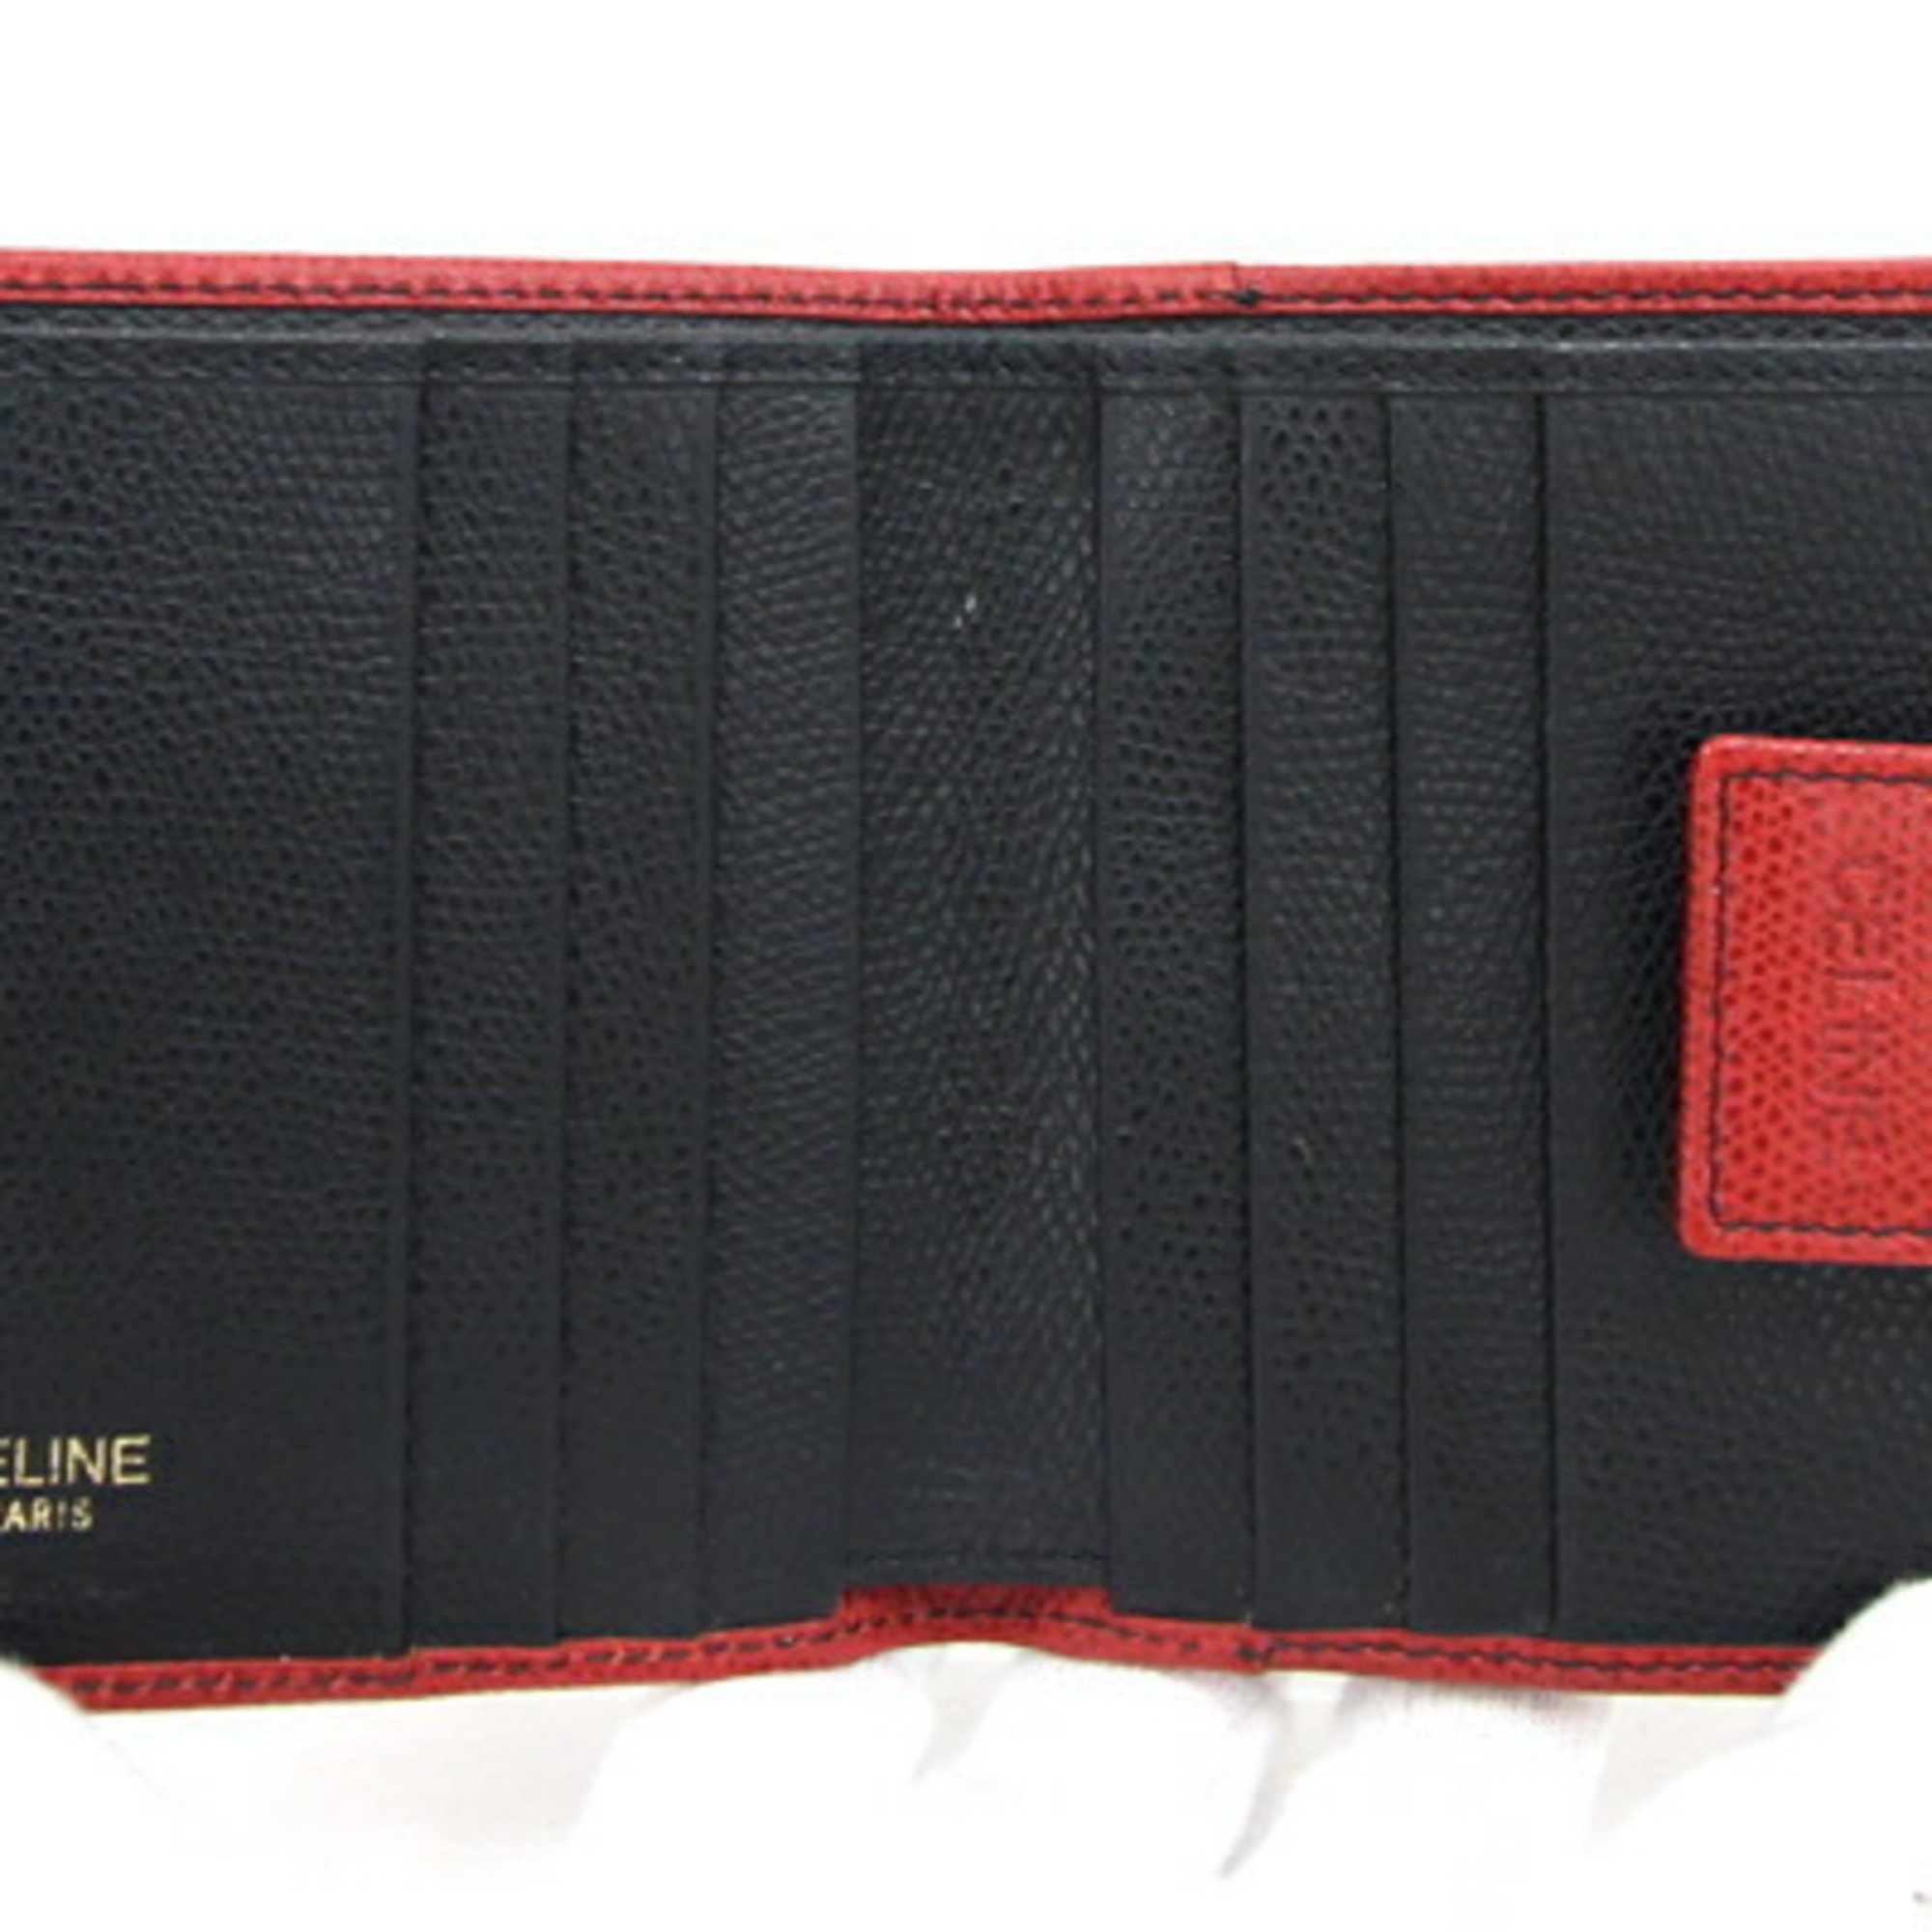 Celine W Wallet Red Leather Compact Bi-fold Women's Old Classic CELINE